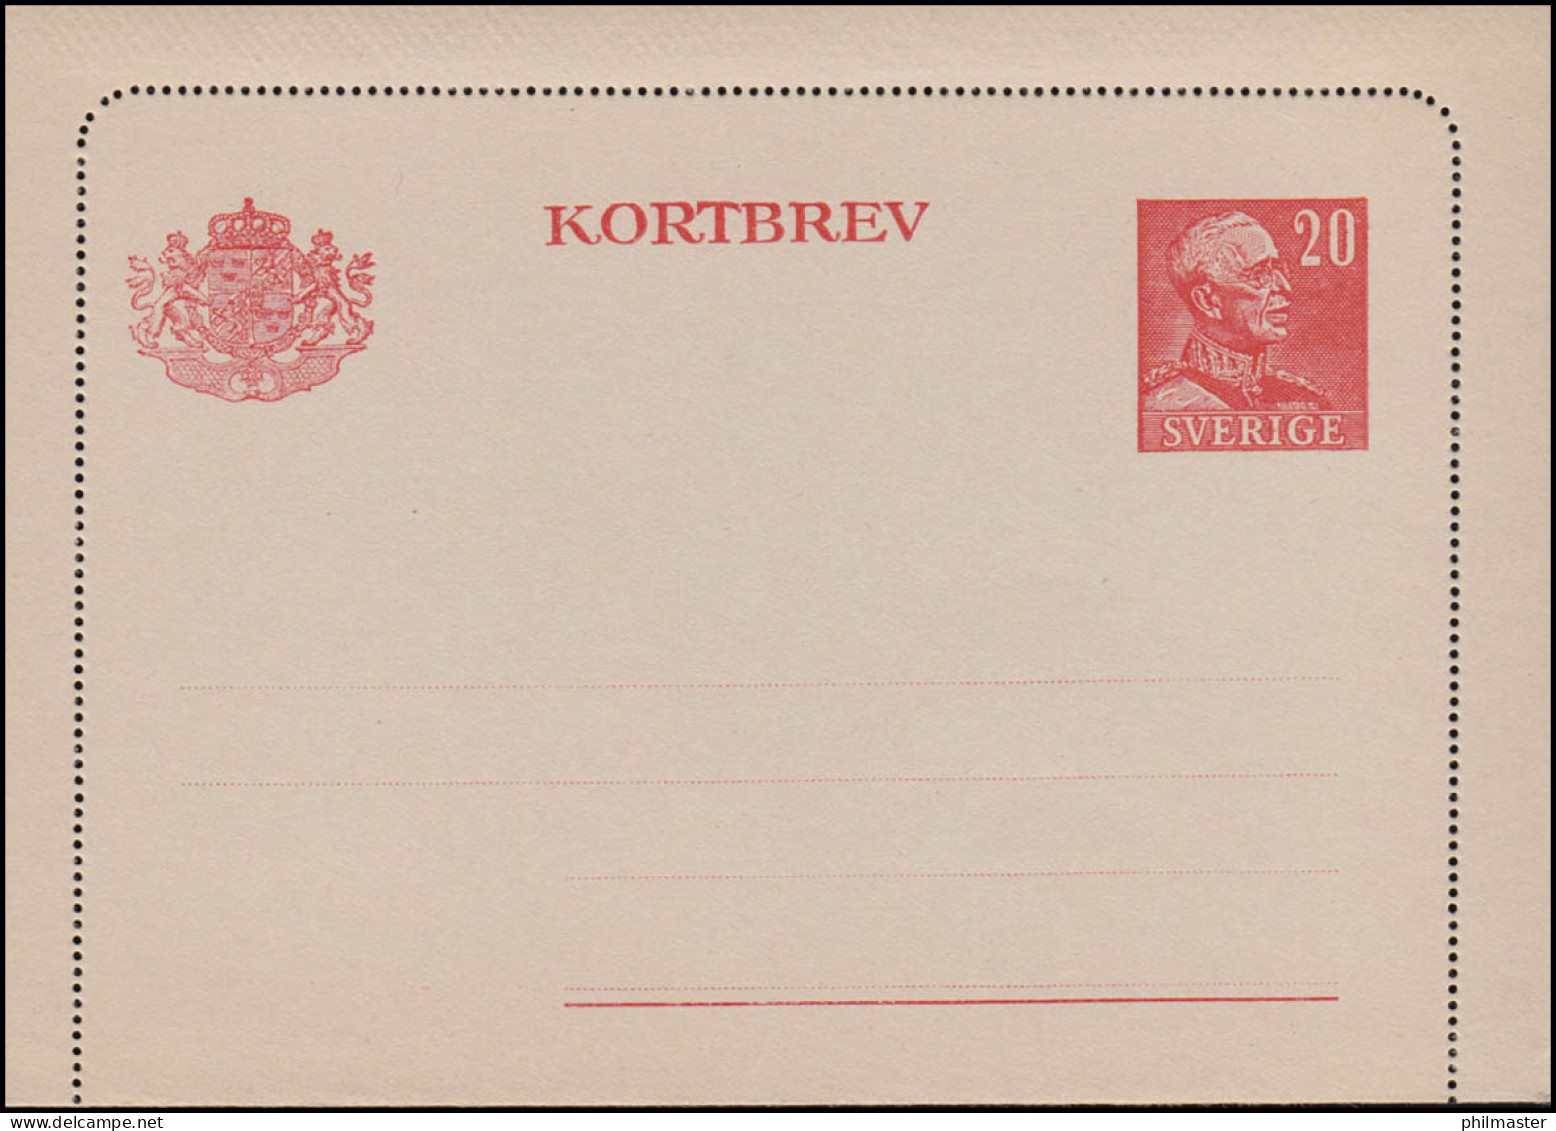 Schweden Kartenbrief K 31 KORTBREV 20 Öre 1946 ** Postfrisch - Postal Stationery